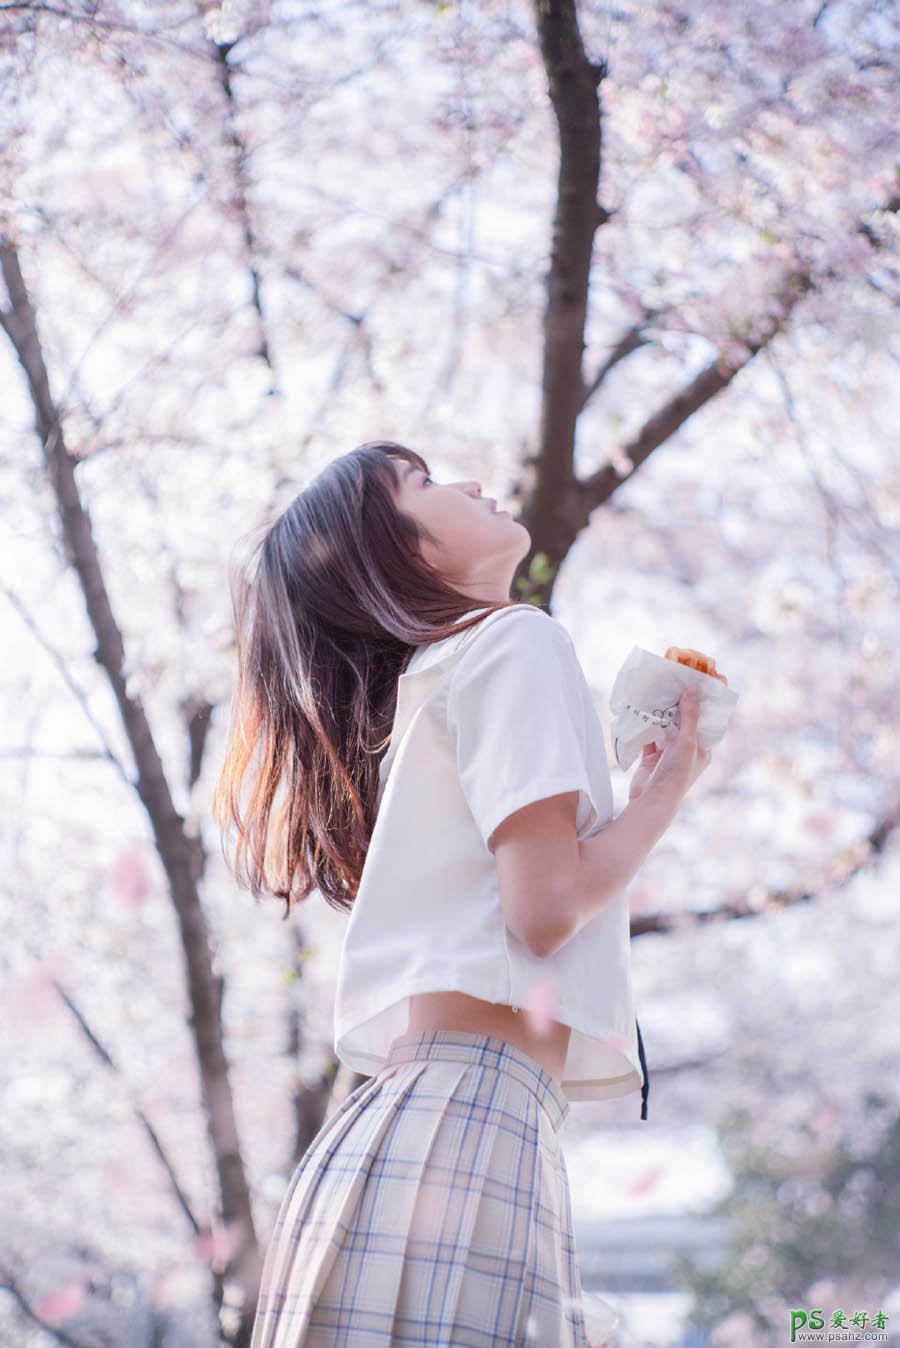 PS女生照片调色教程：学习给樱花树下的清纯女生调出清新甜美的色